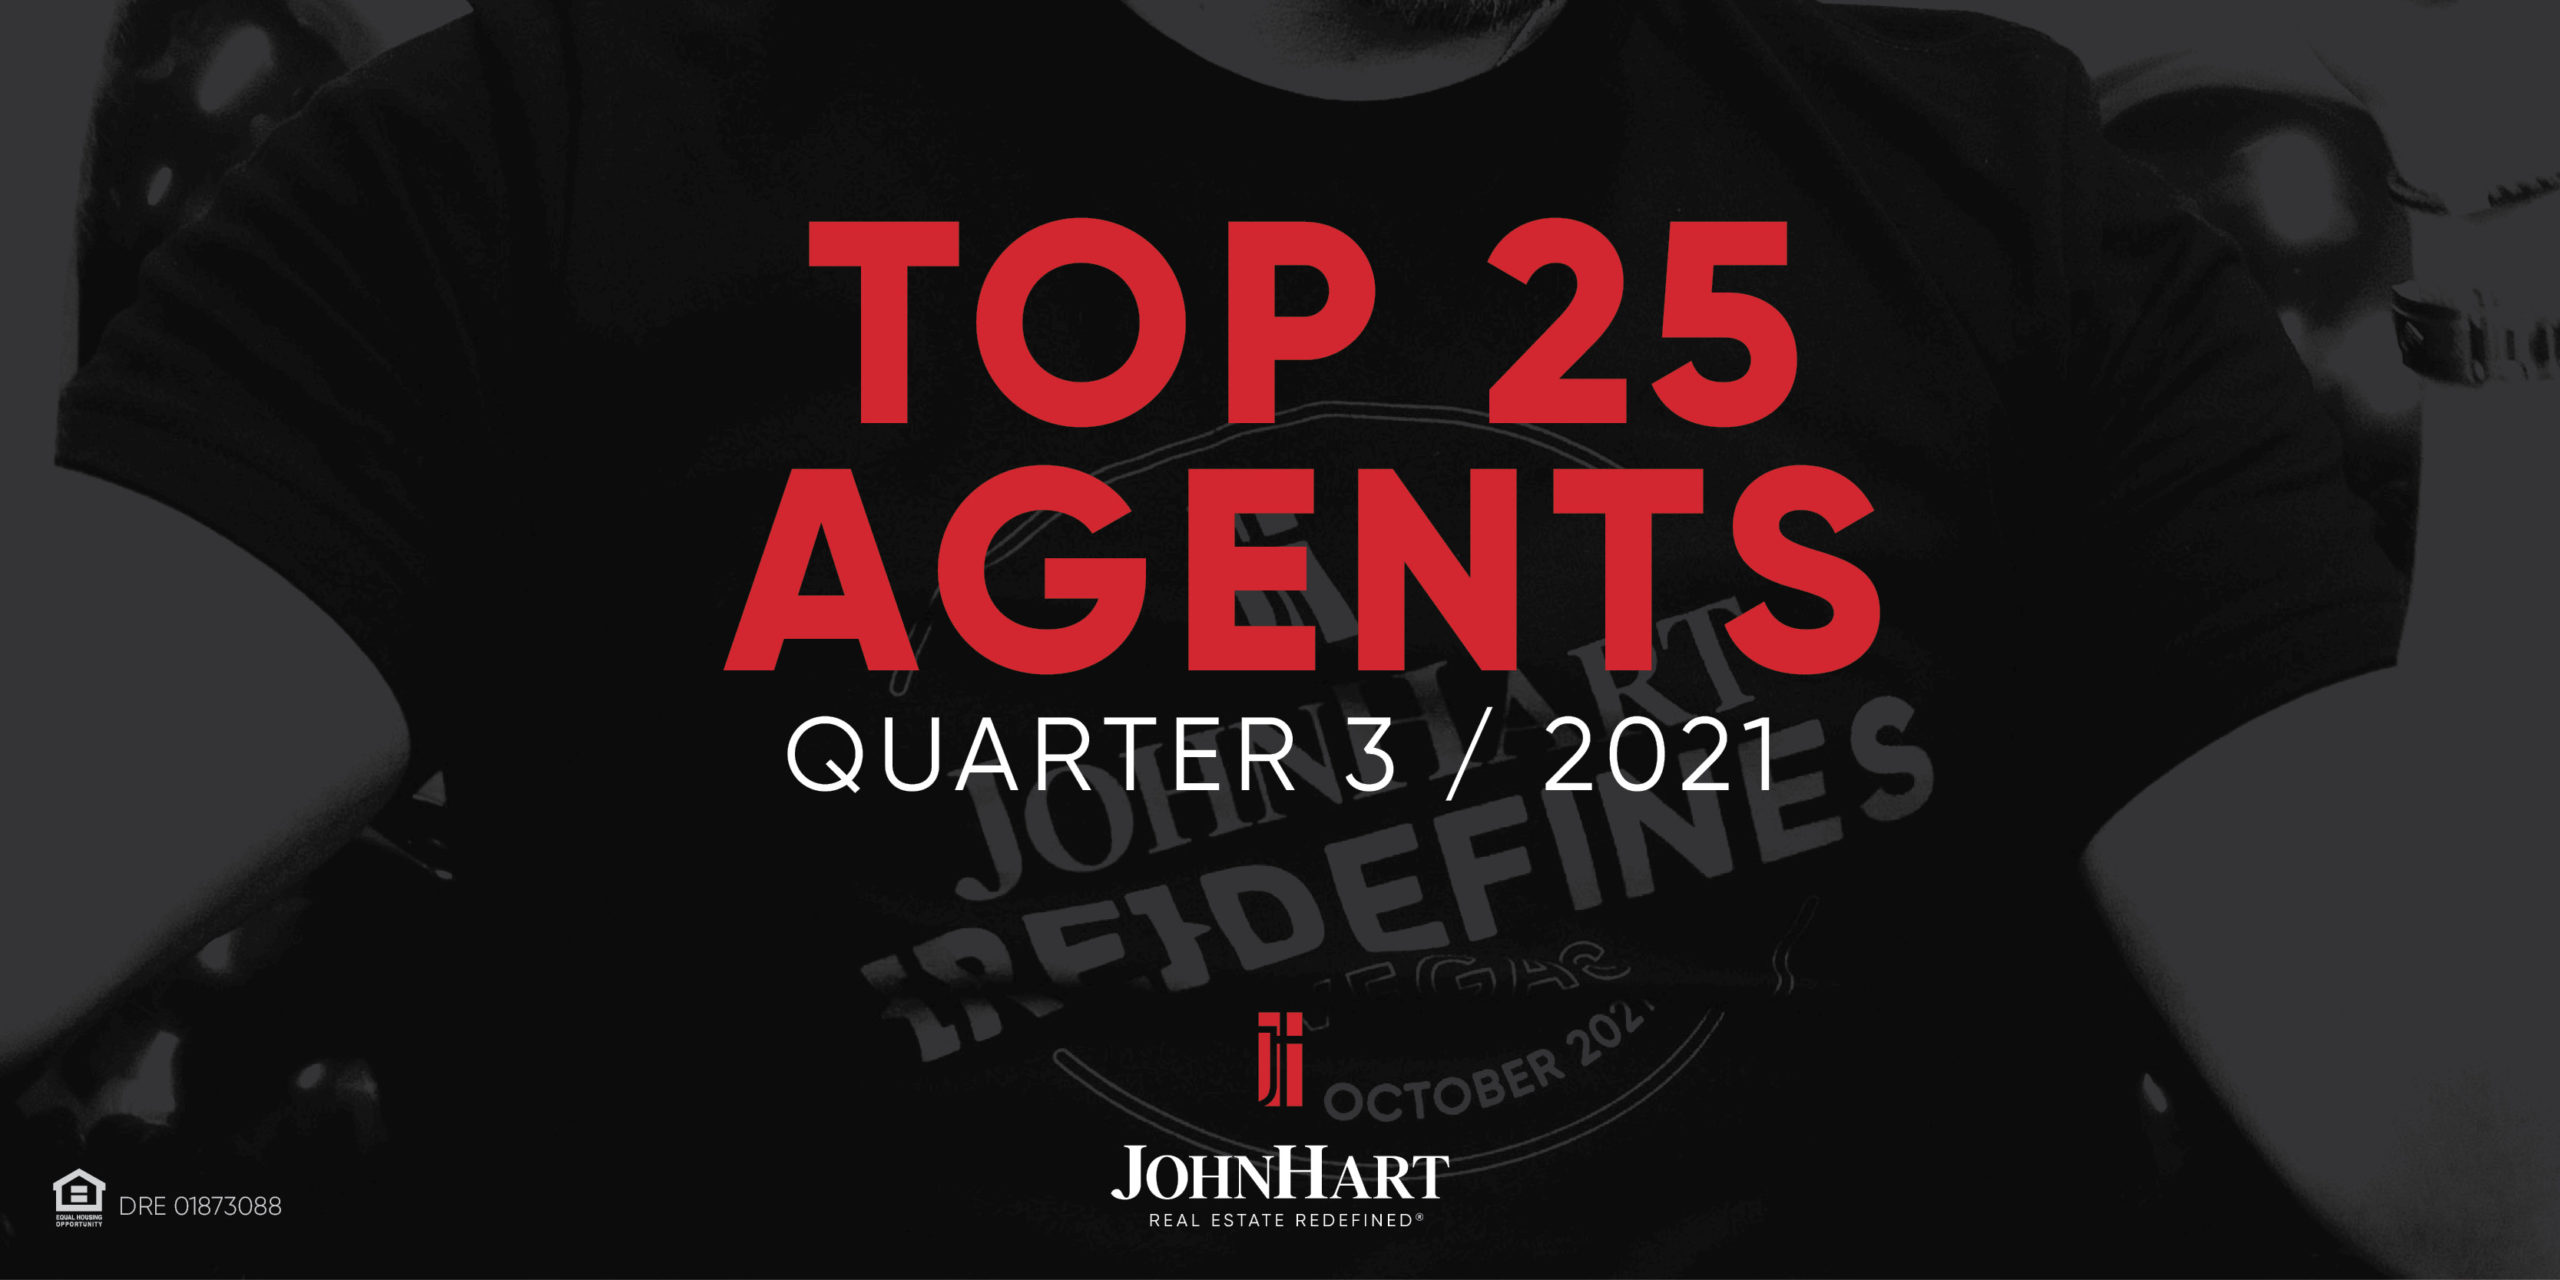 Top 25 Agents of Quarter 3, 2021